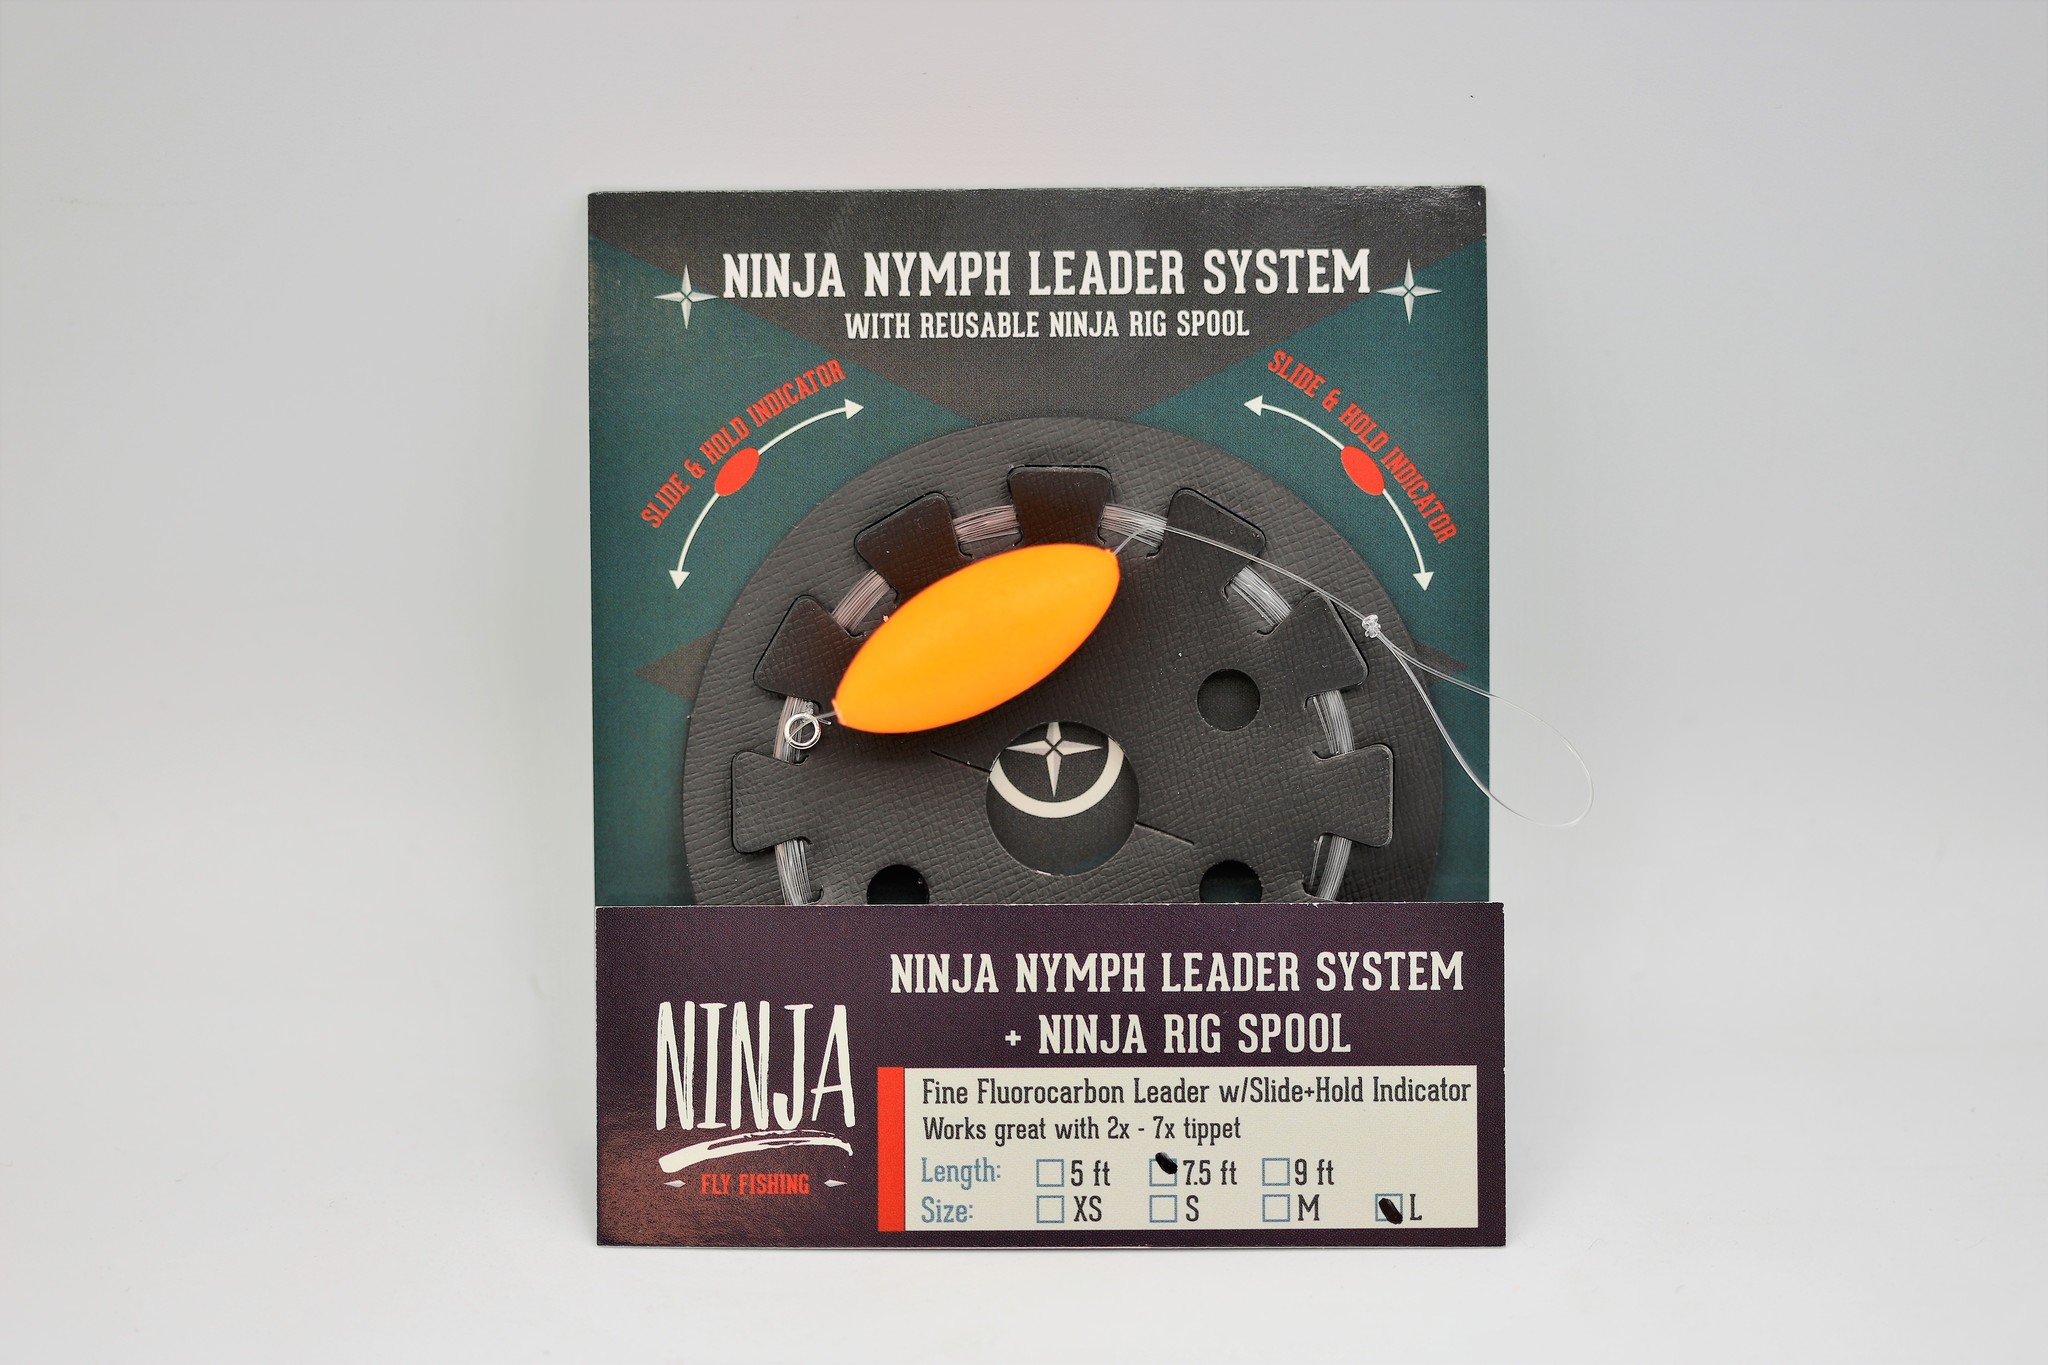 https://cdn.shoplightspeed.com/shops/607759/files/38867668/ninja-nymph-leader-system-75ft.jpg